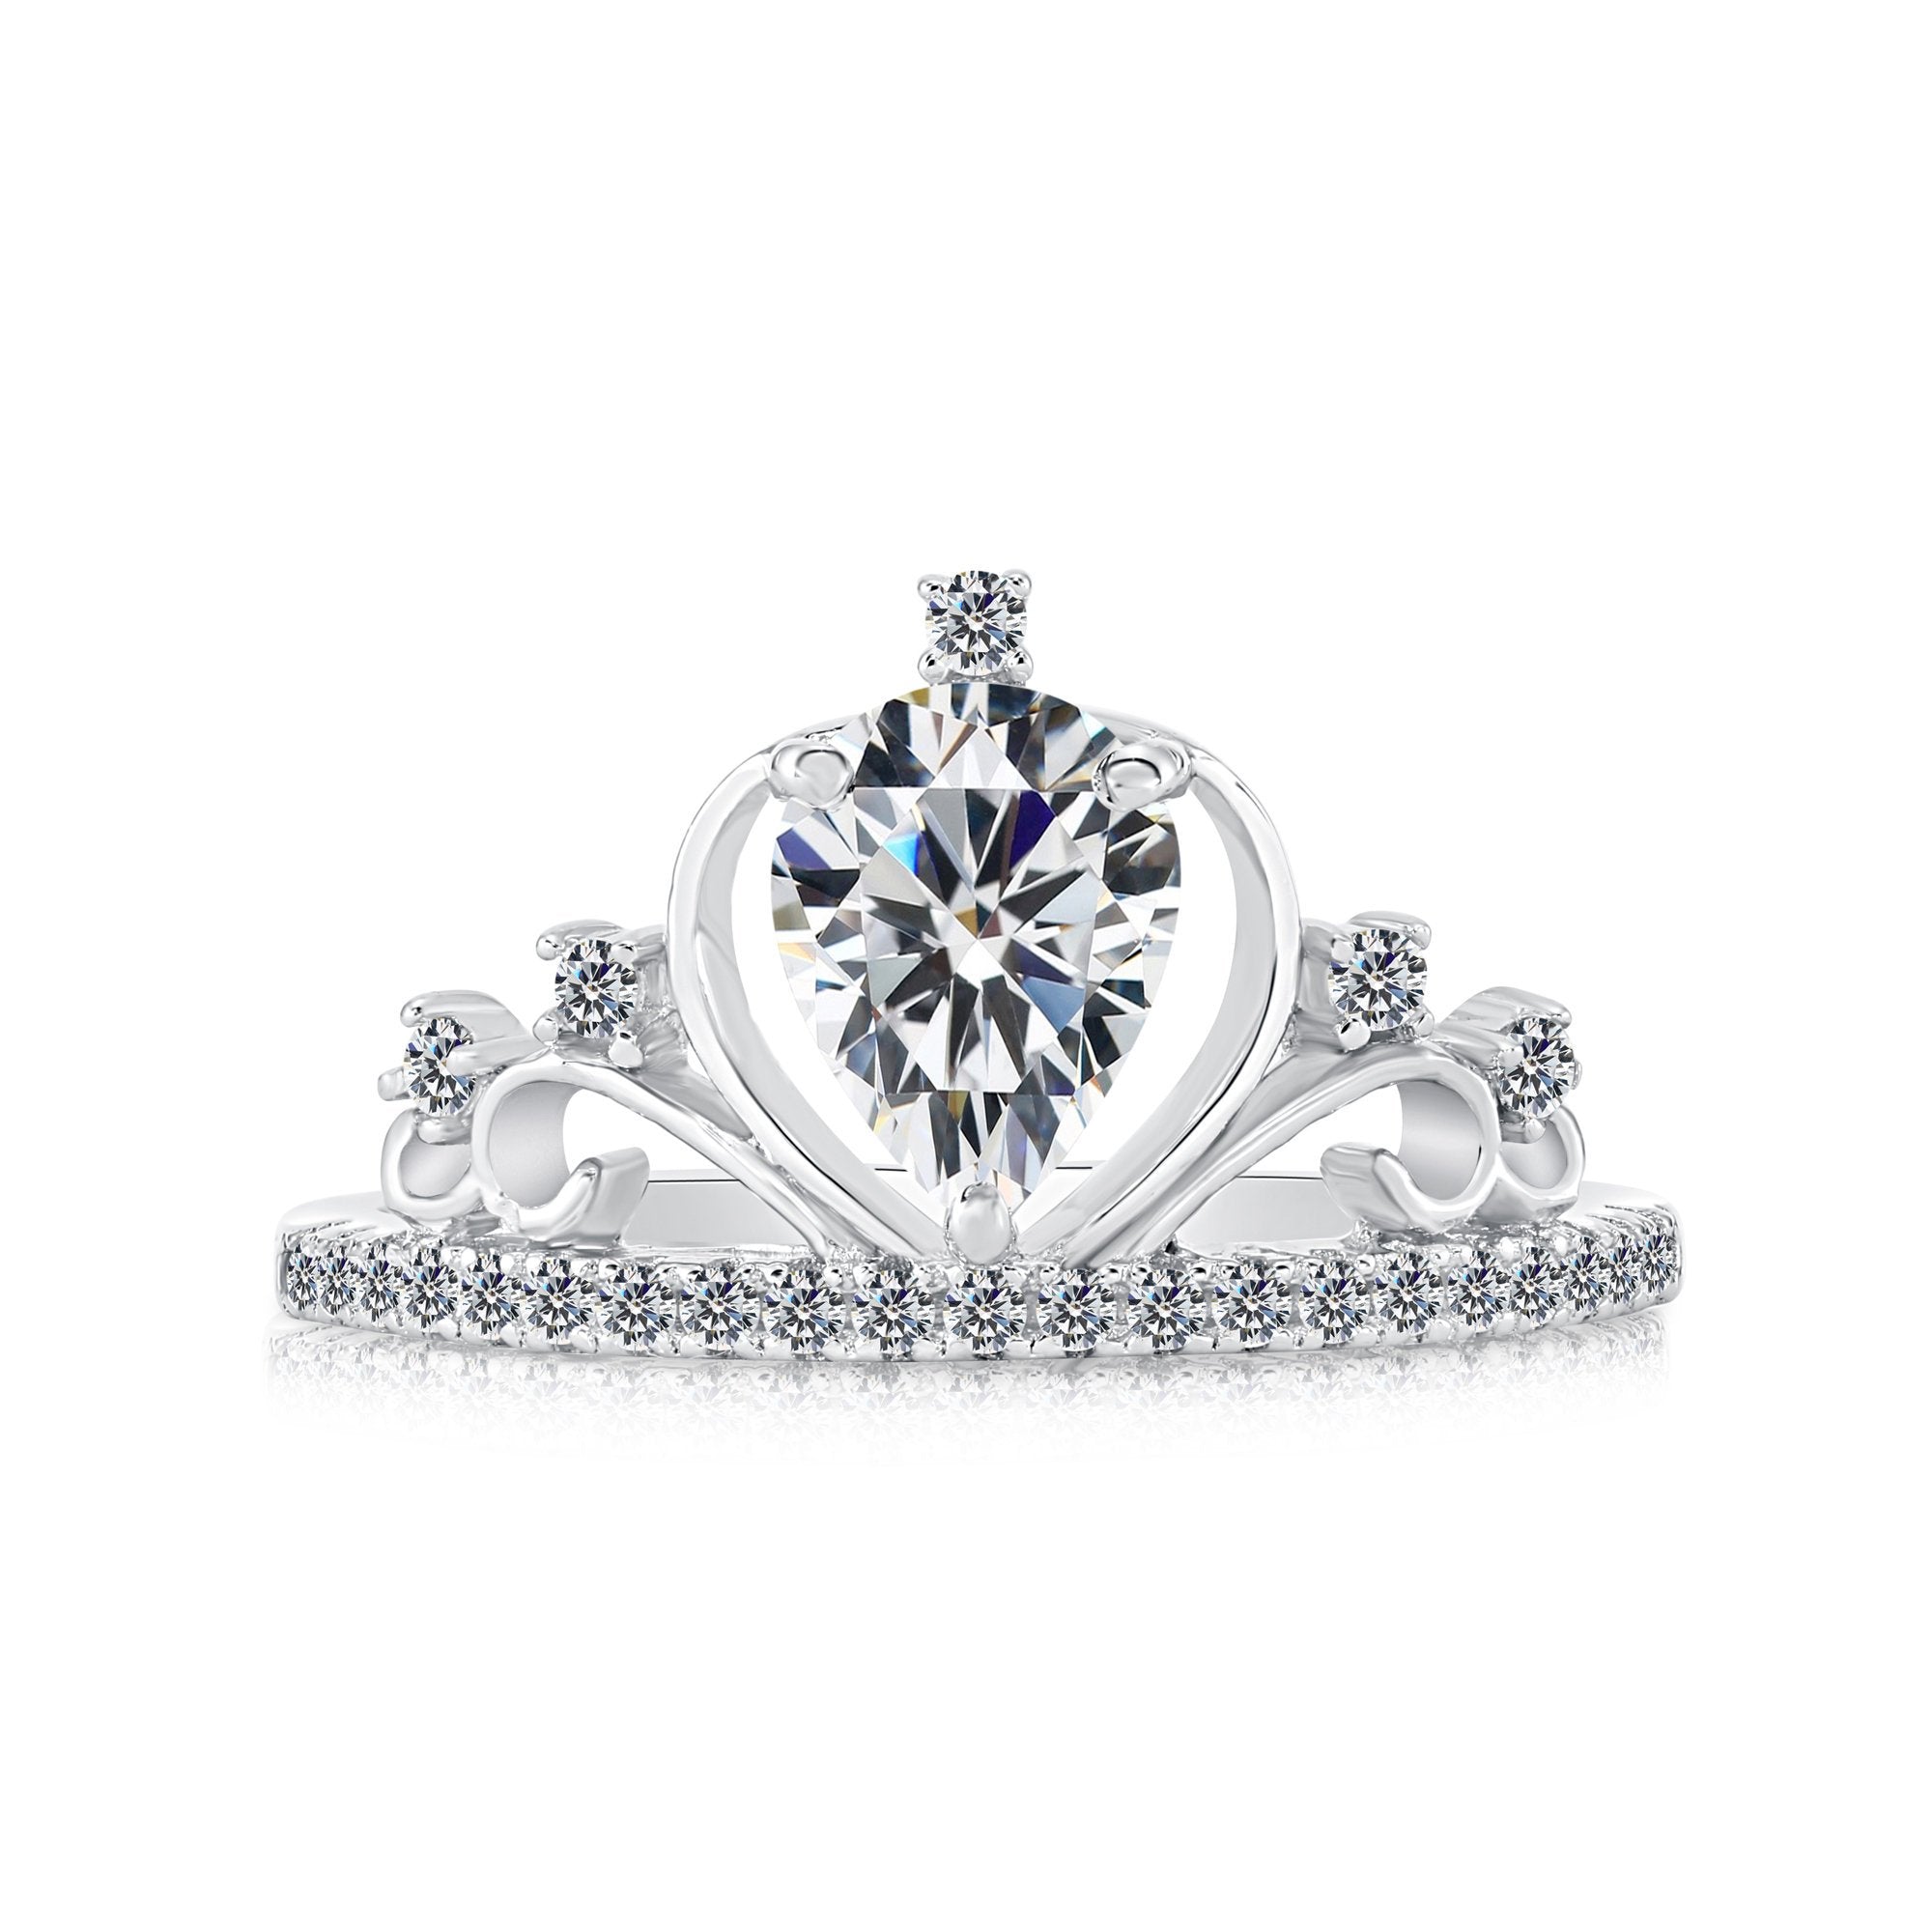 Sterling Silver Royal Princess Tiara Ring